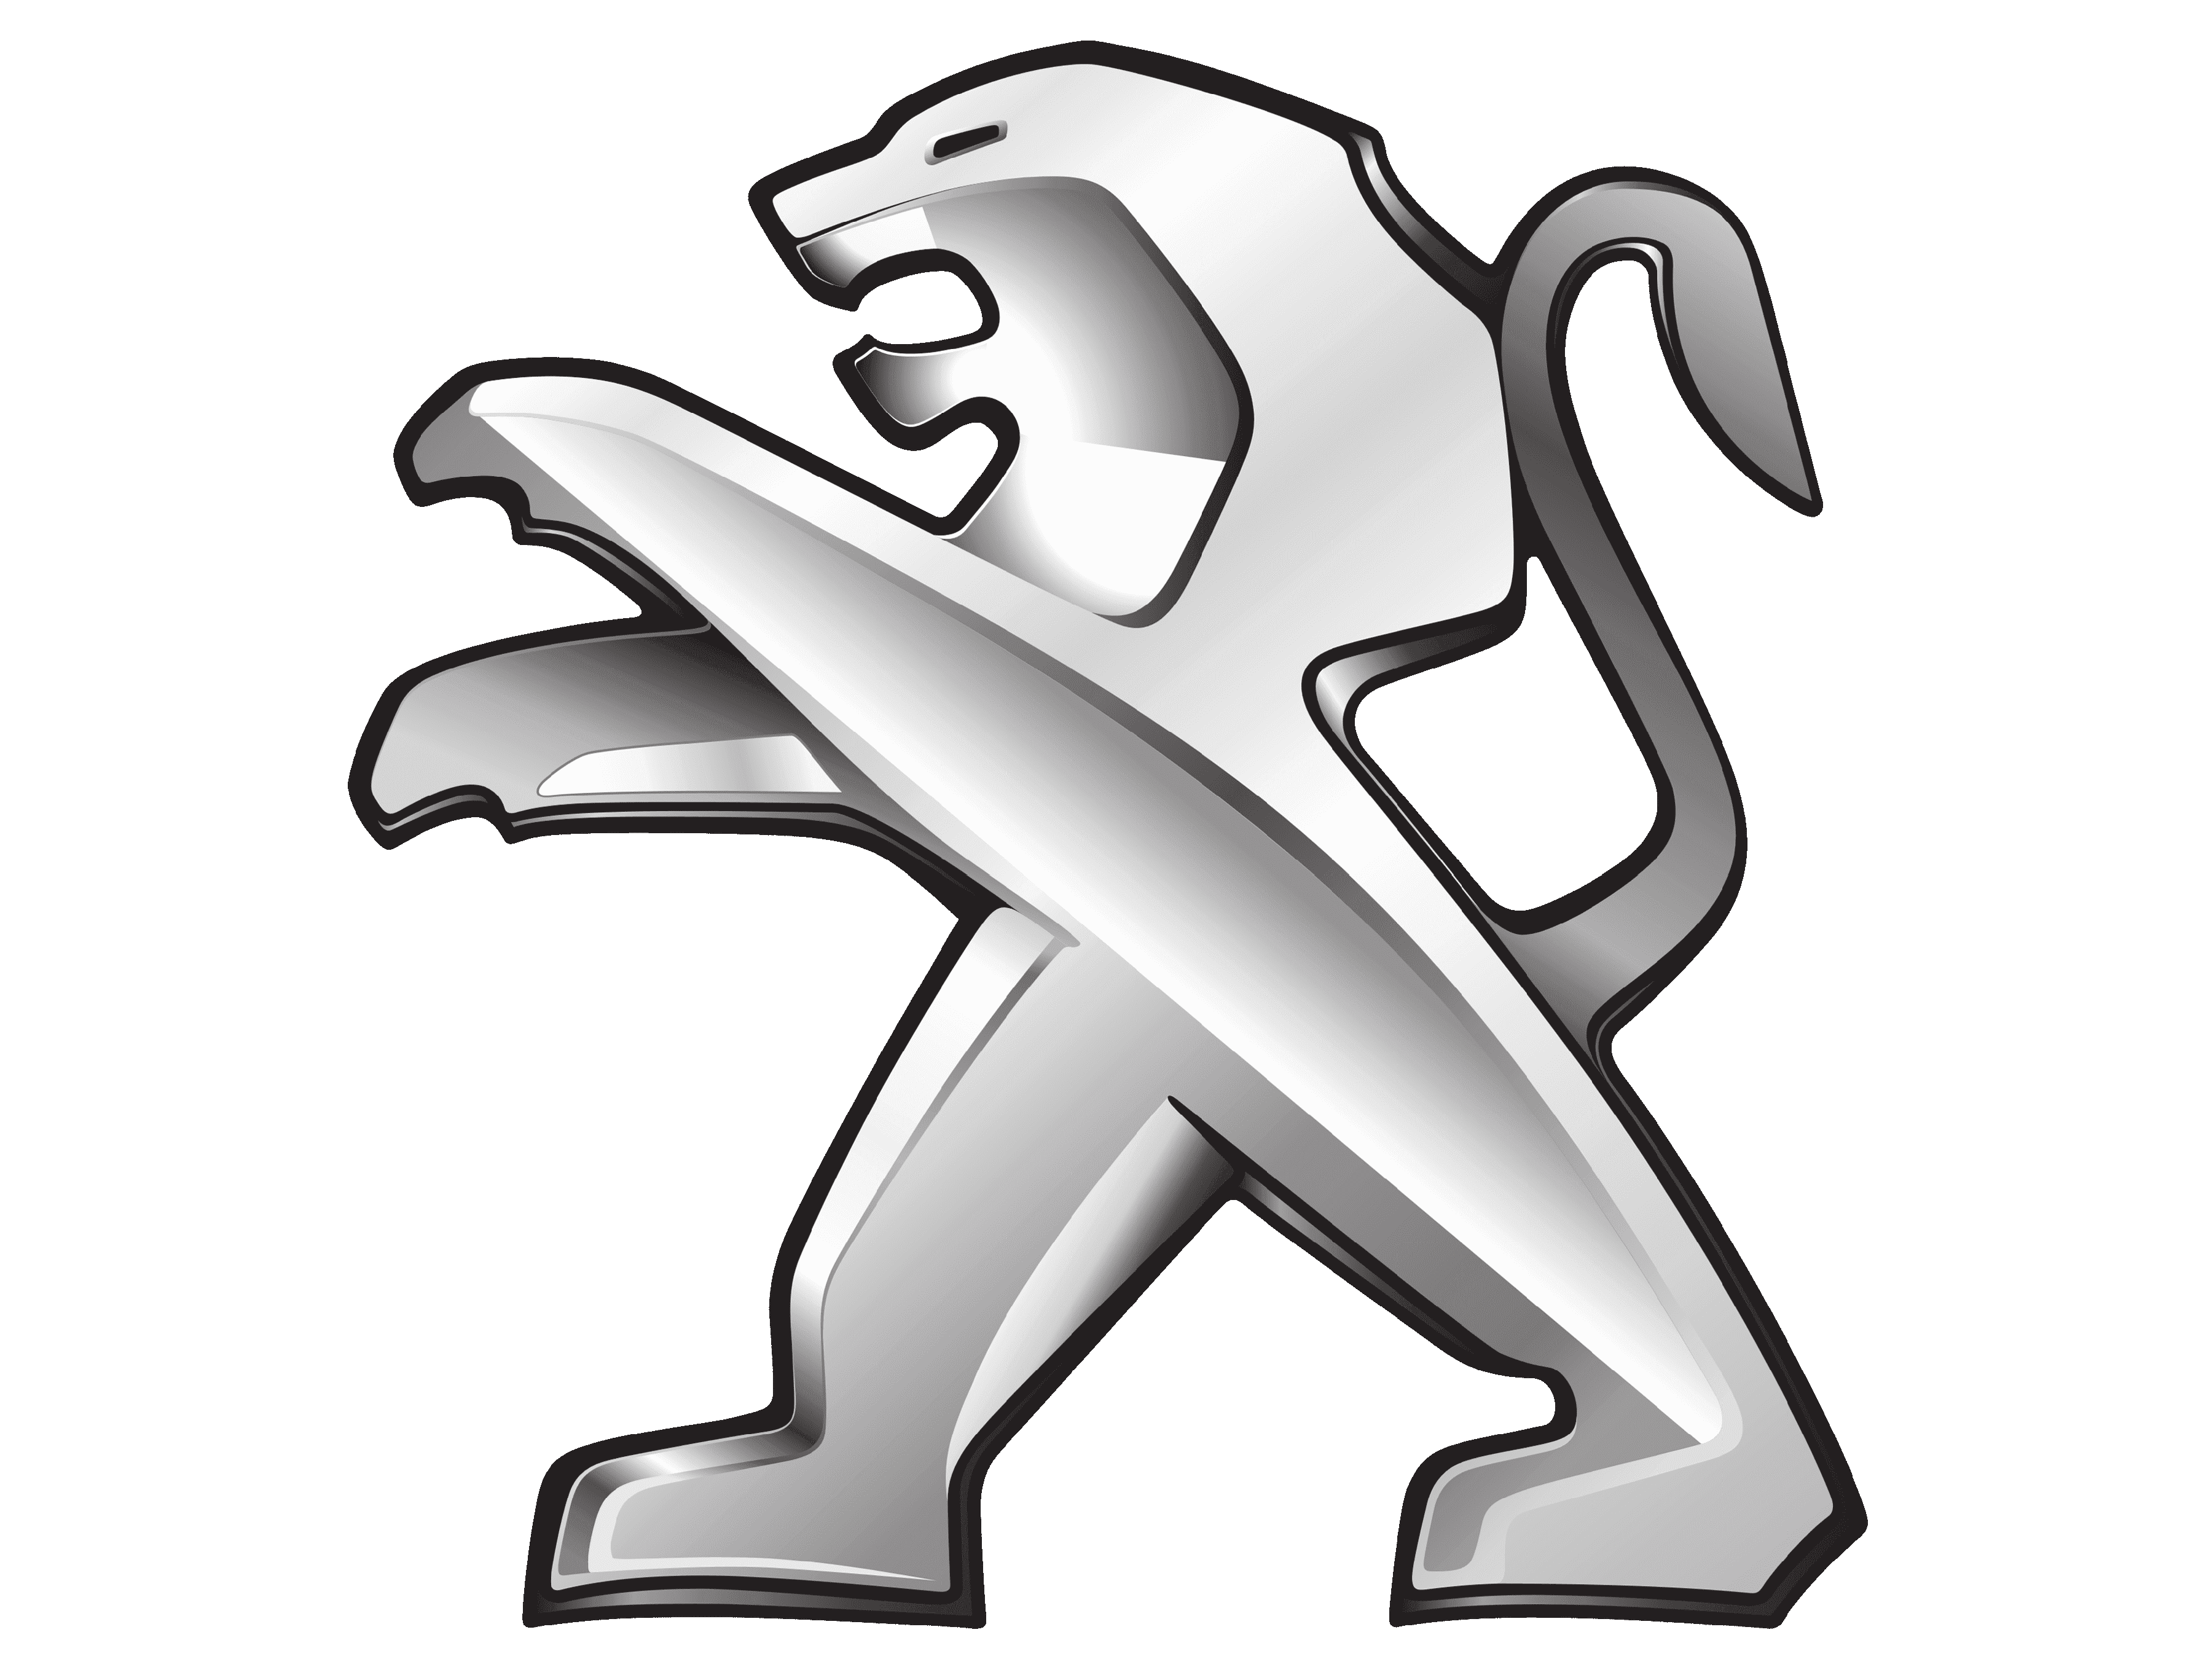 Peugeot Logo Transparent Png Stickpng Images